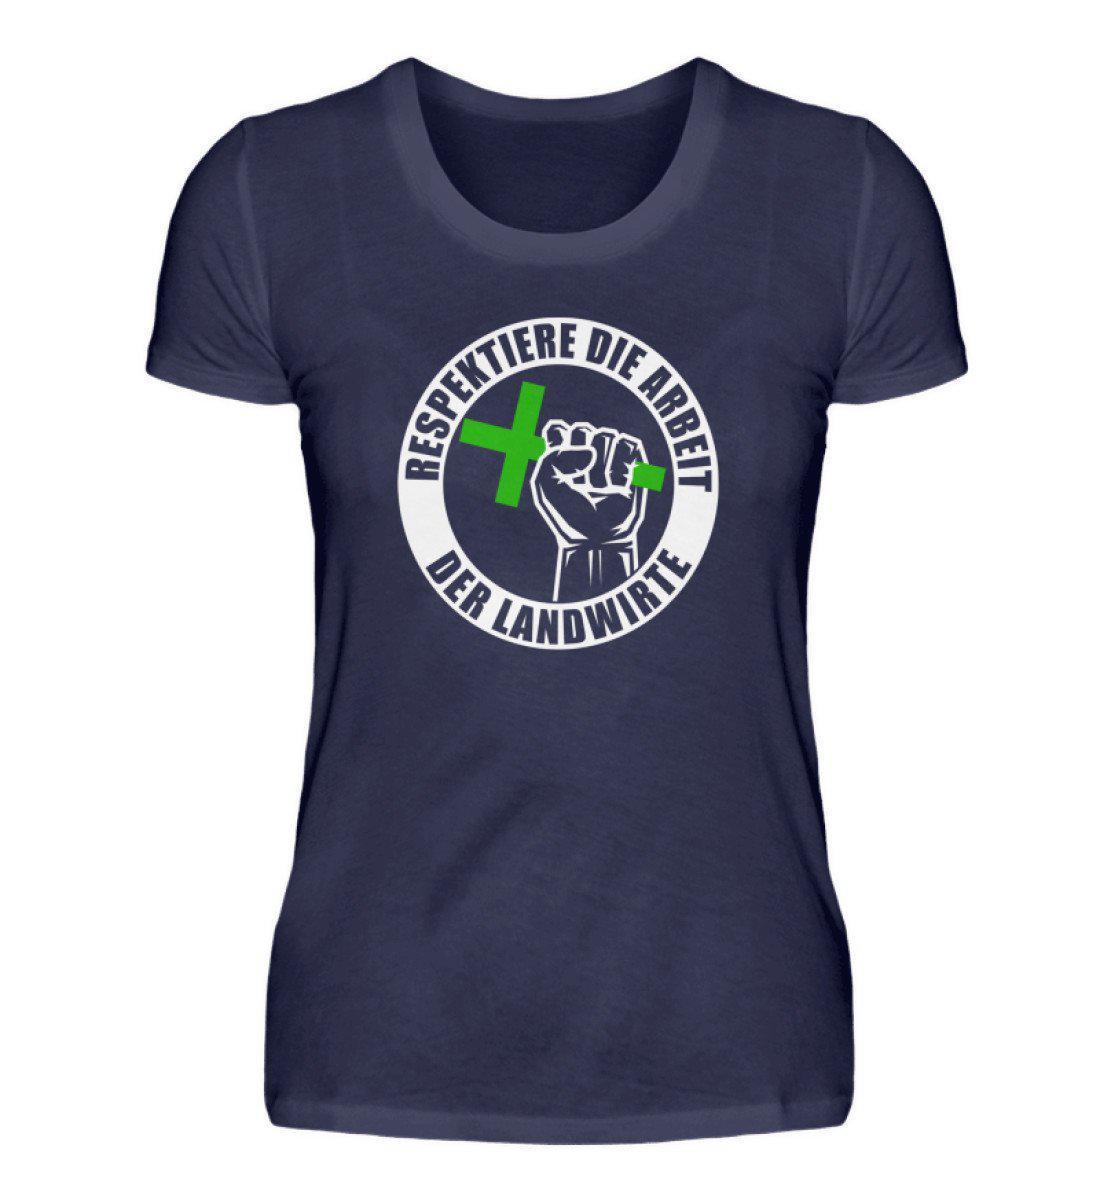 Respektiert Landwirte · Damen T-Shirt-Damen Basic T-Shirt-Navy-S-Agrarstarz